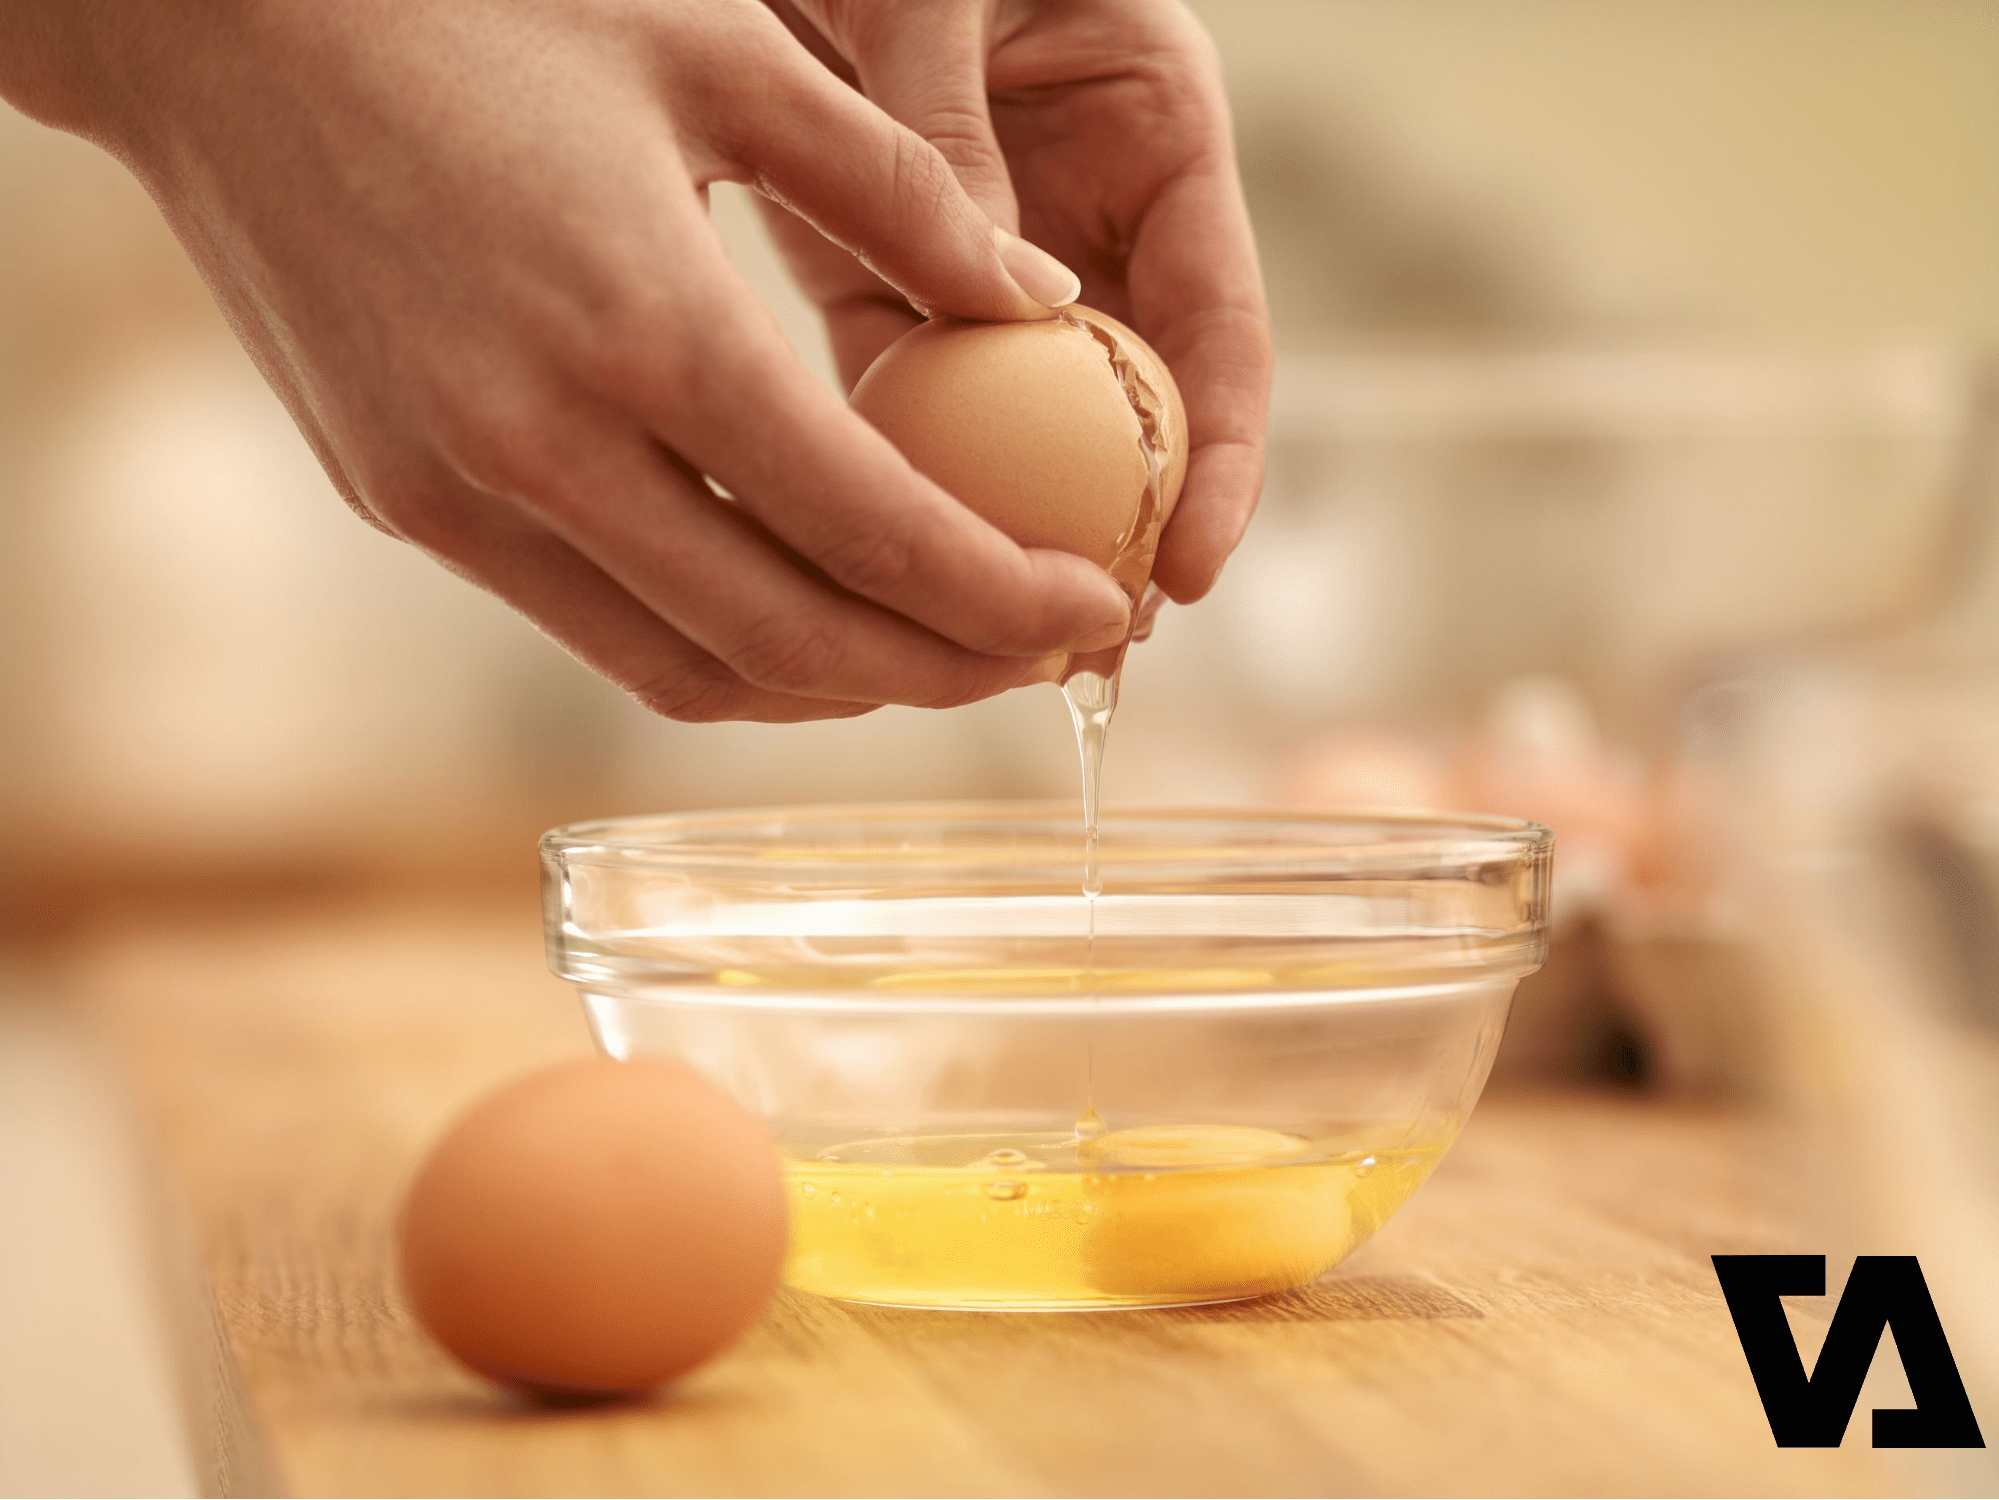 Tách lấy lòng trắng trứng để làm sạch nấm mốc trên túi da